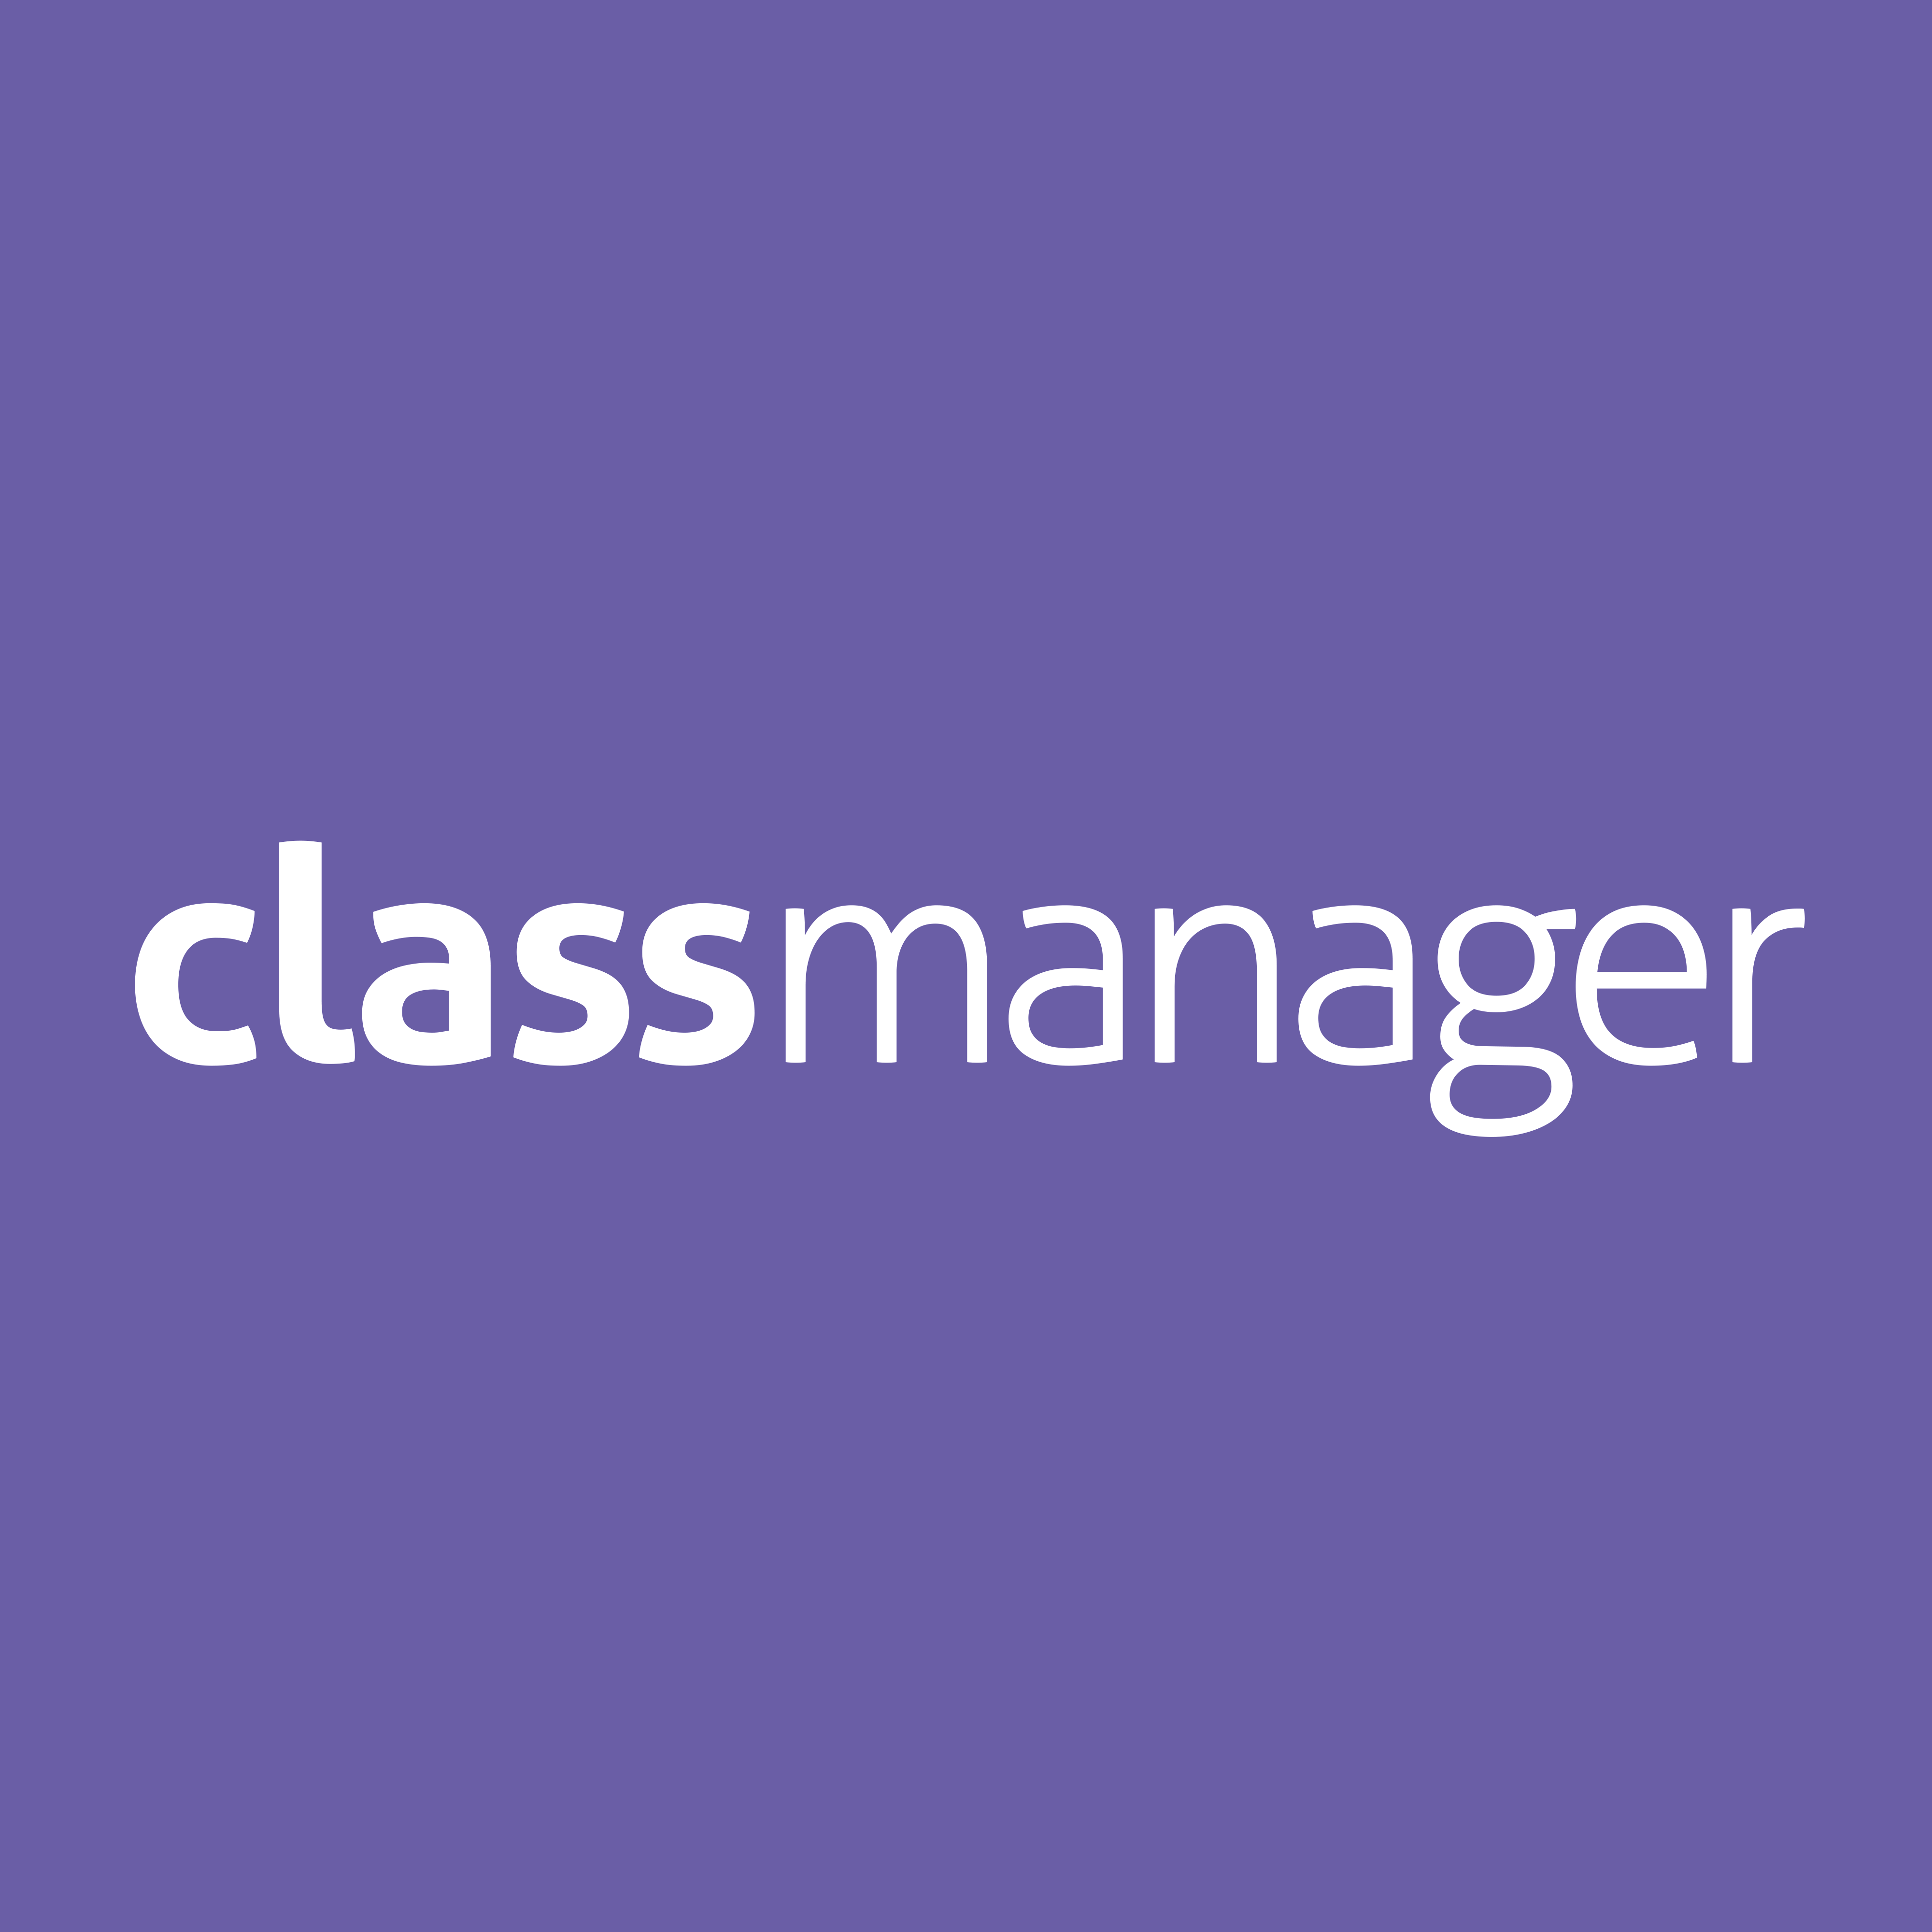 (c) Classmanager.com